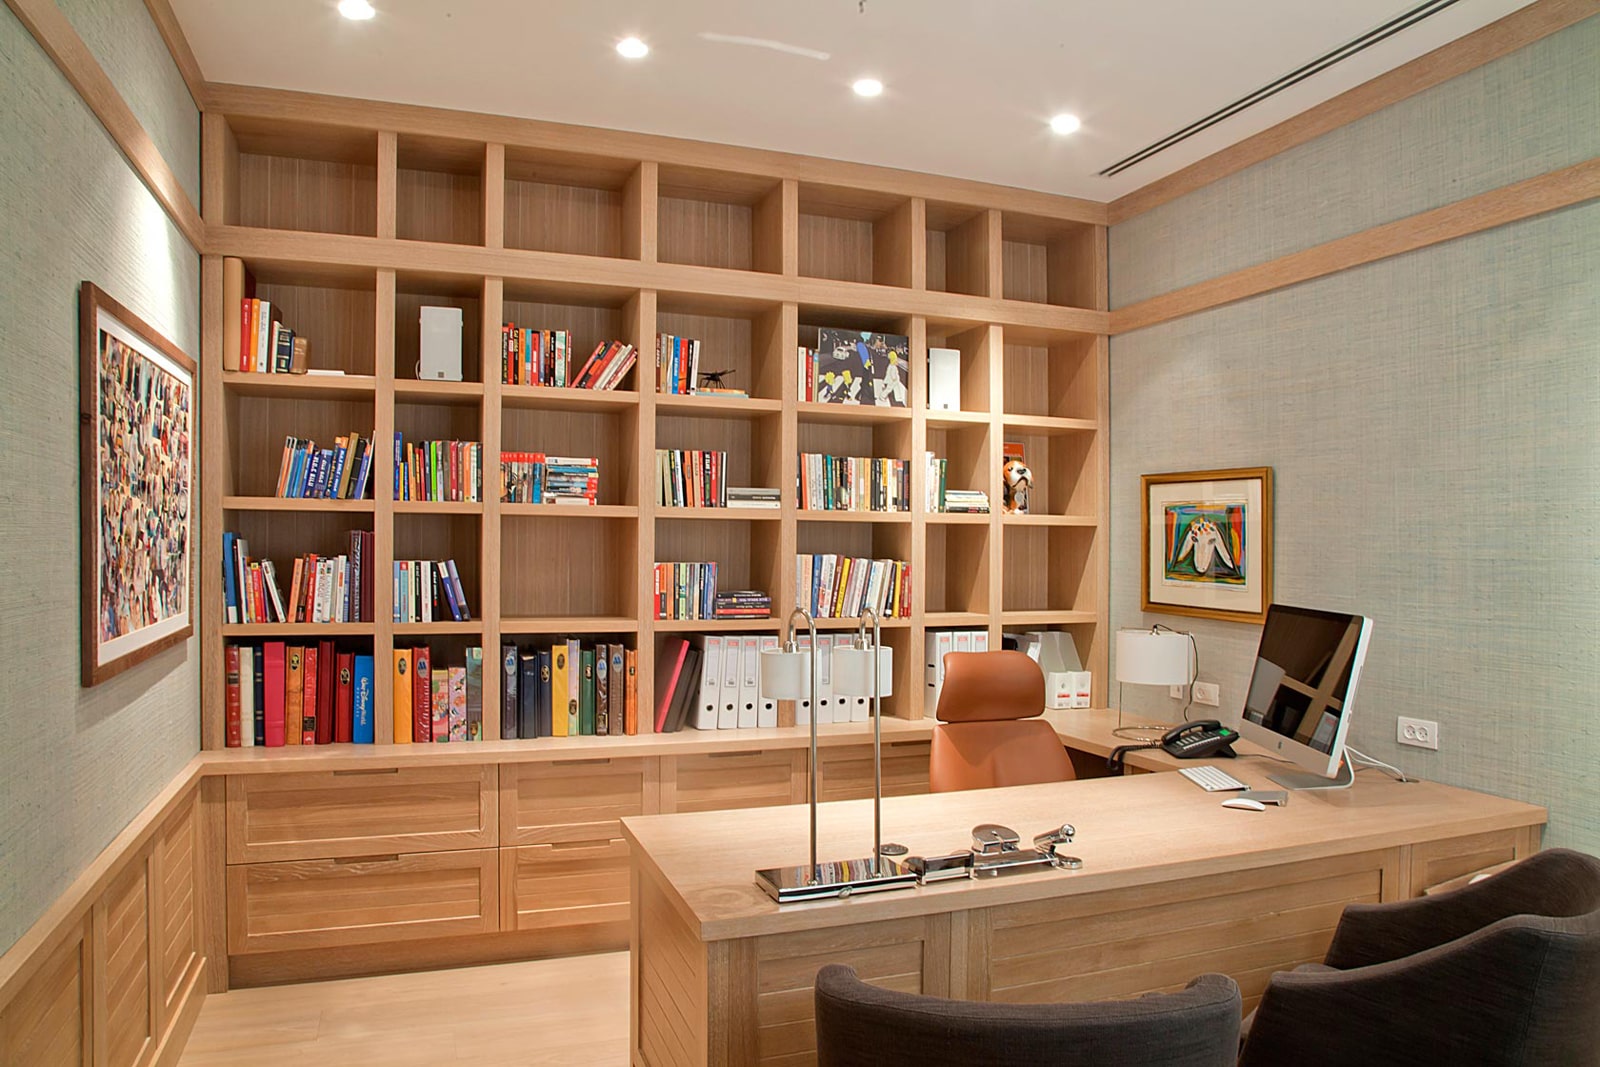 חדר שולחן עבודה כתיבה ספרייה ספריה אלון אירופאי דלתות מסגרת עץ ידית אינטגרלית